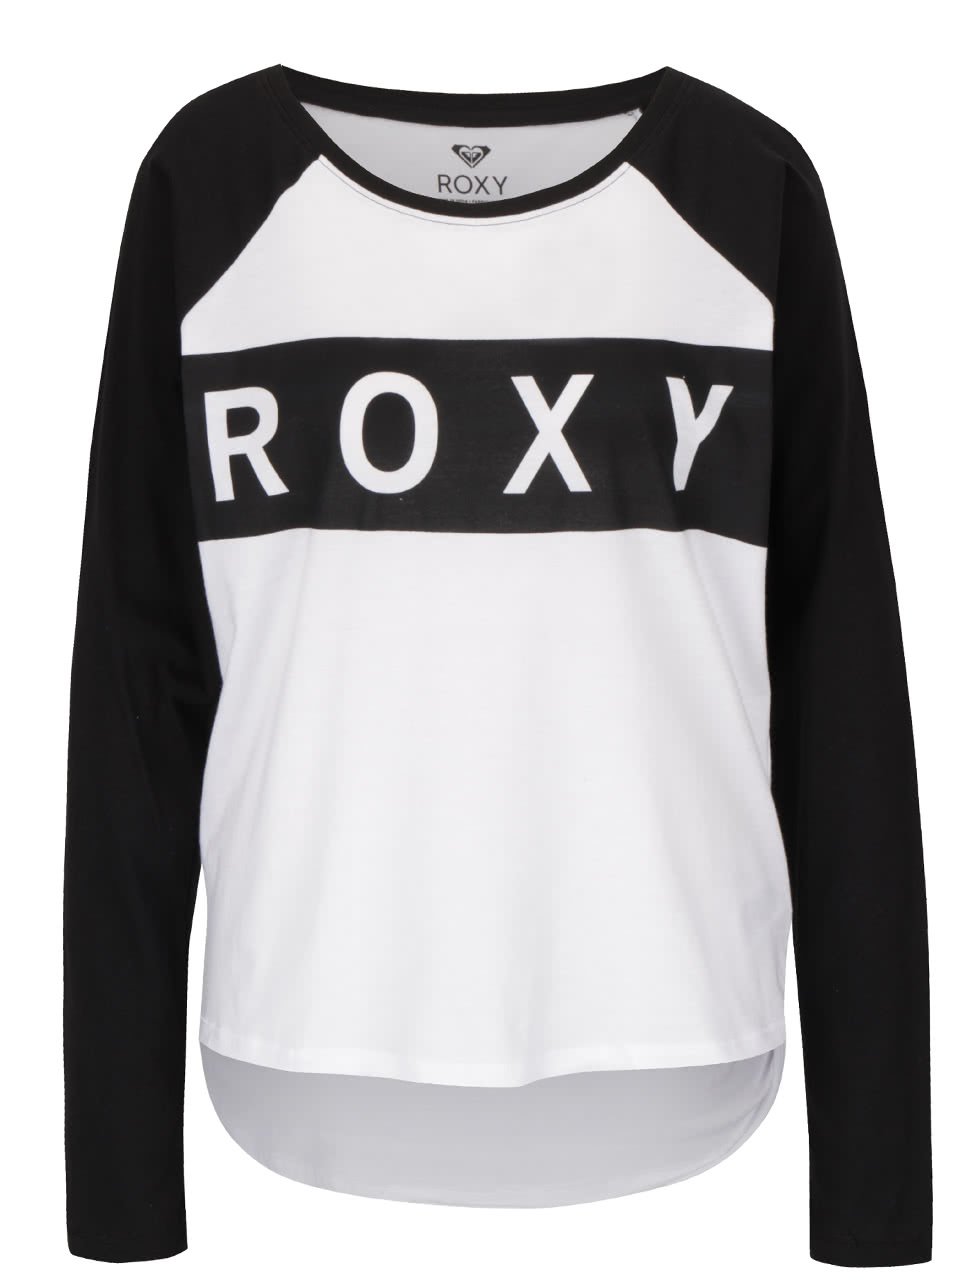 Černo-bílé tričko s nápisem a dlouhým rukávem Roxy Love